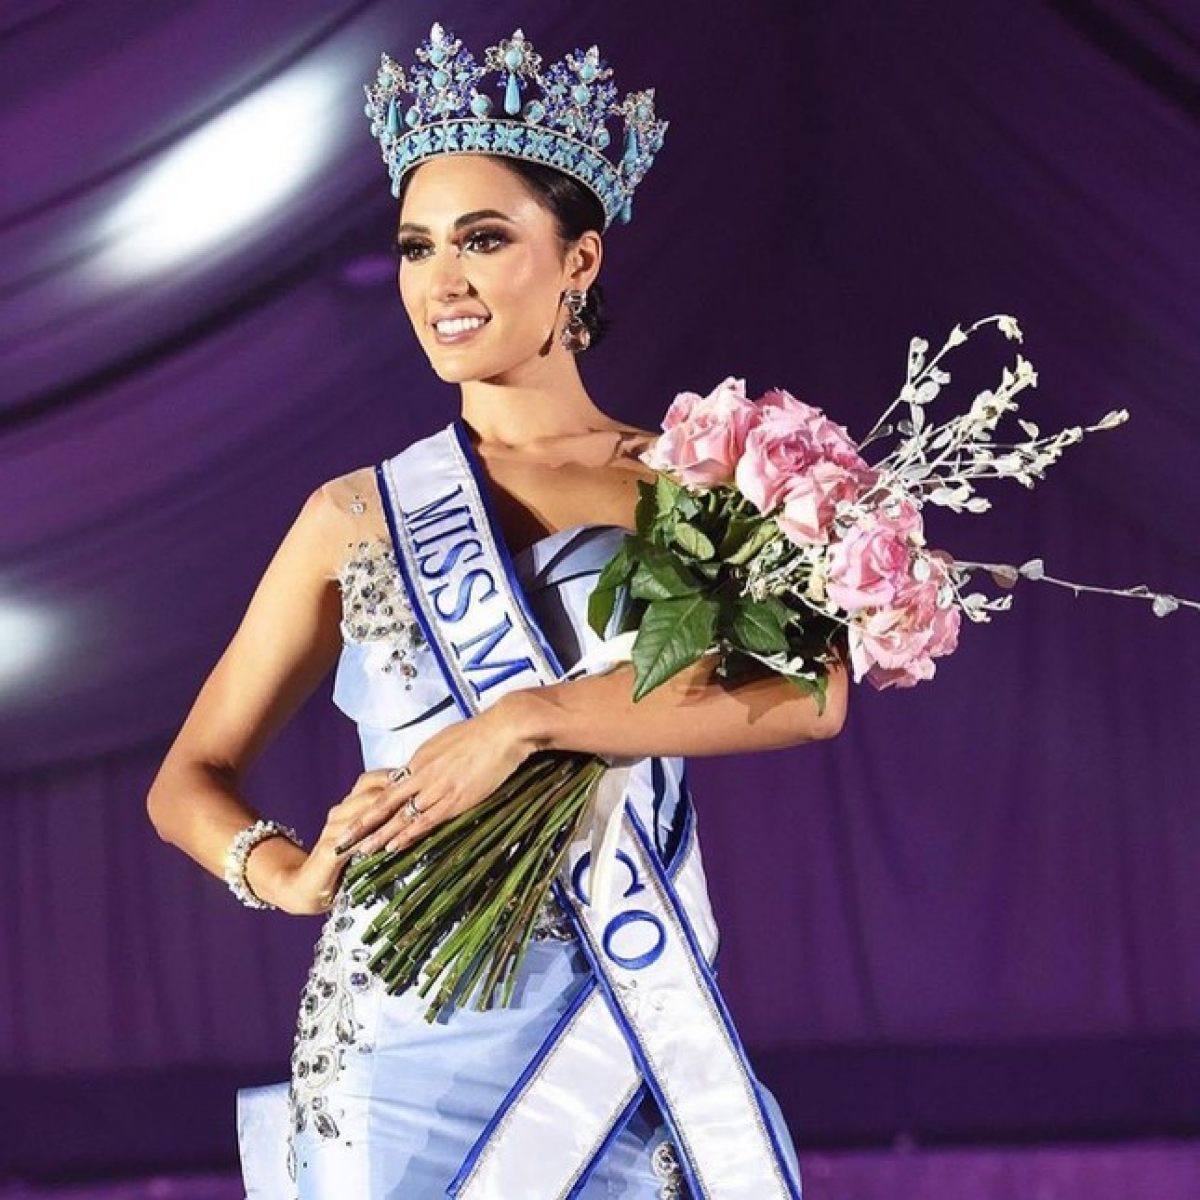 Nhan sắc ngọt ngào của Hoa hậu Mexico - 'Đối thủ' đáng gờm của Đỗ Thị Hà tại Miss World - Ảnh 1.